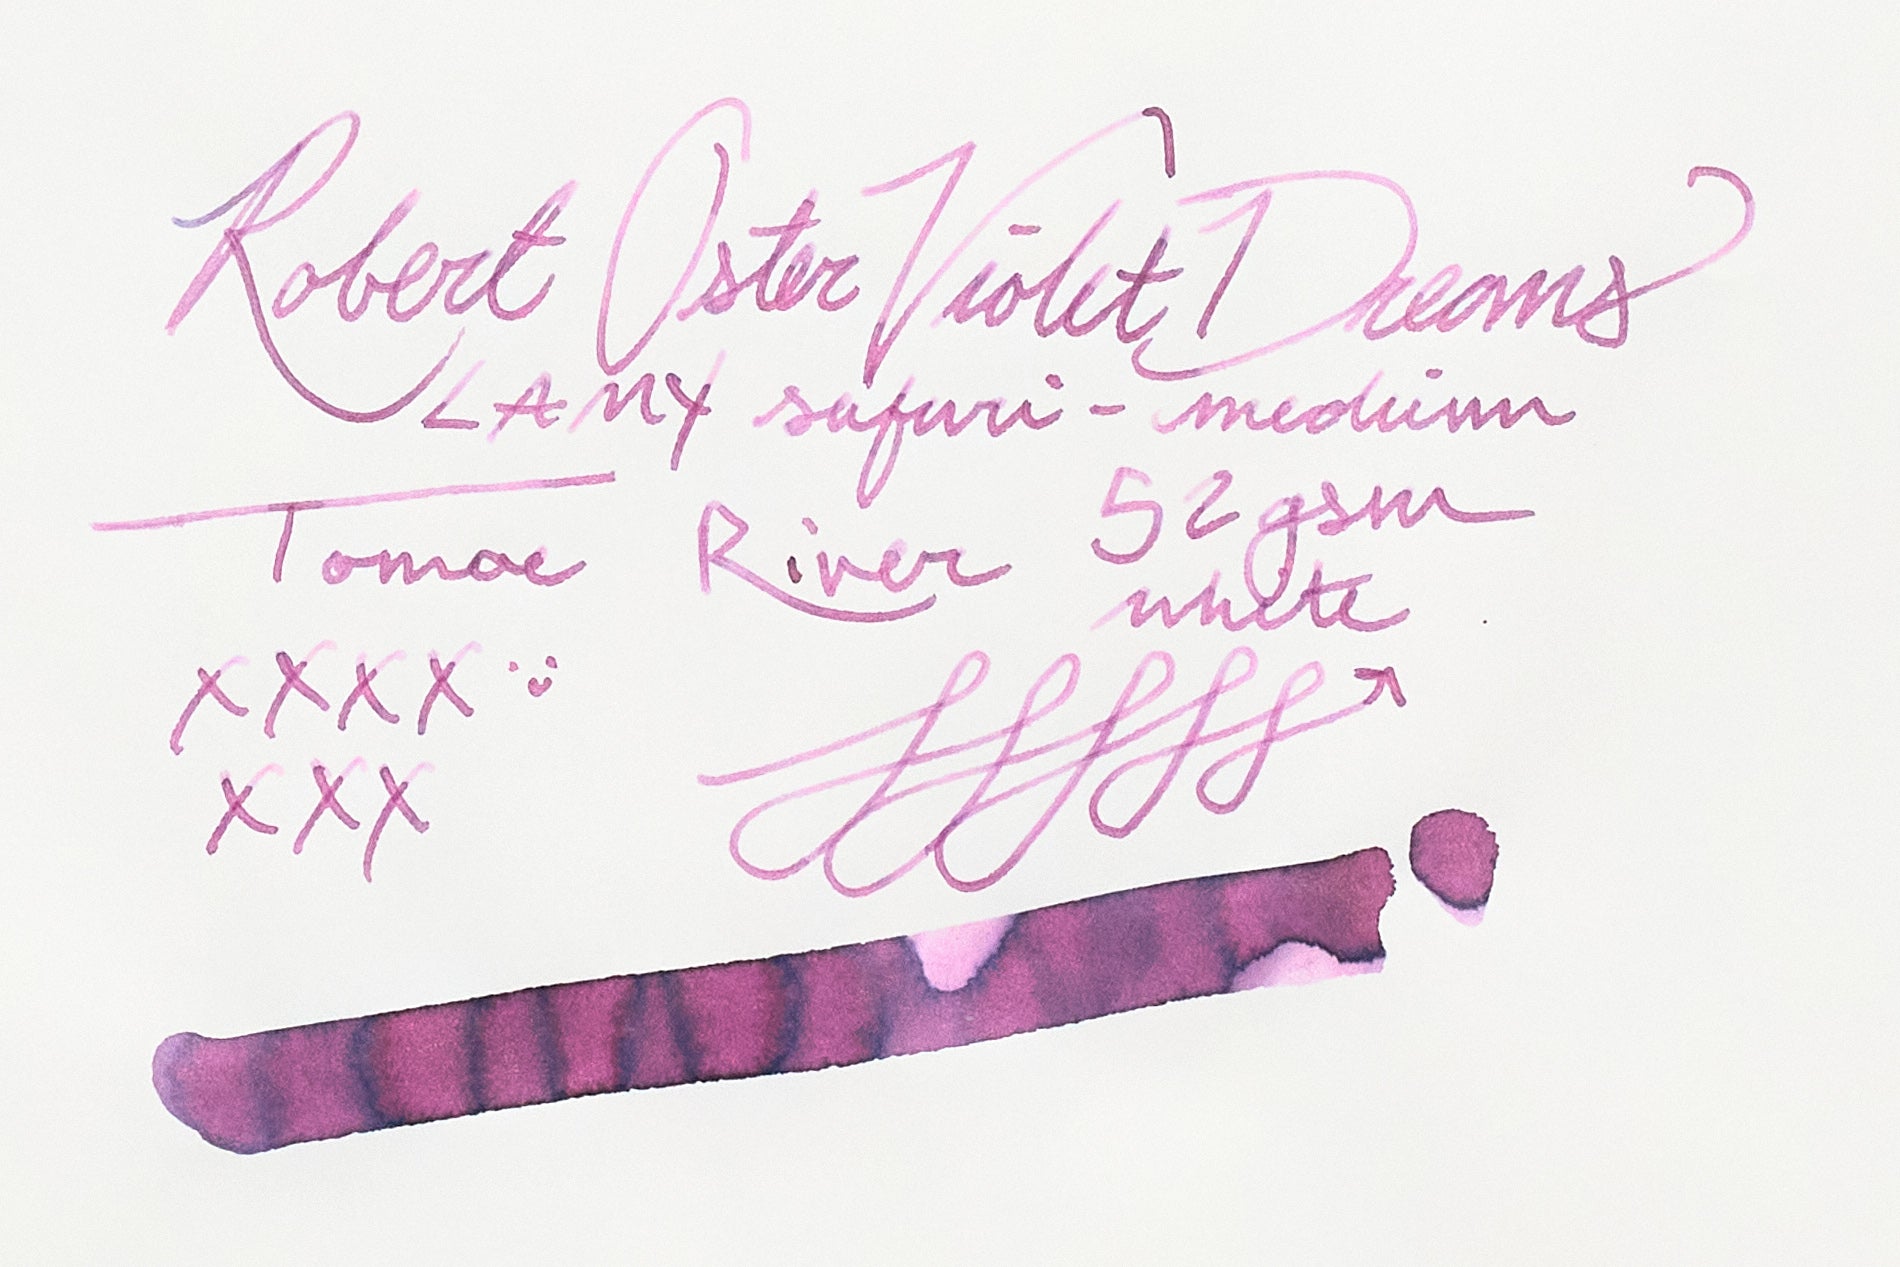 Robert Oster violet Dreams on Tomoe river Paper